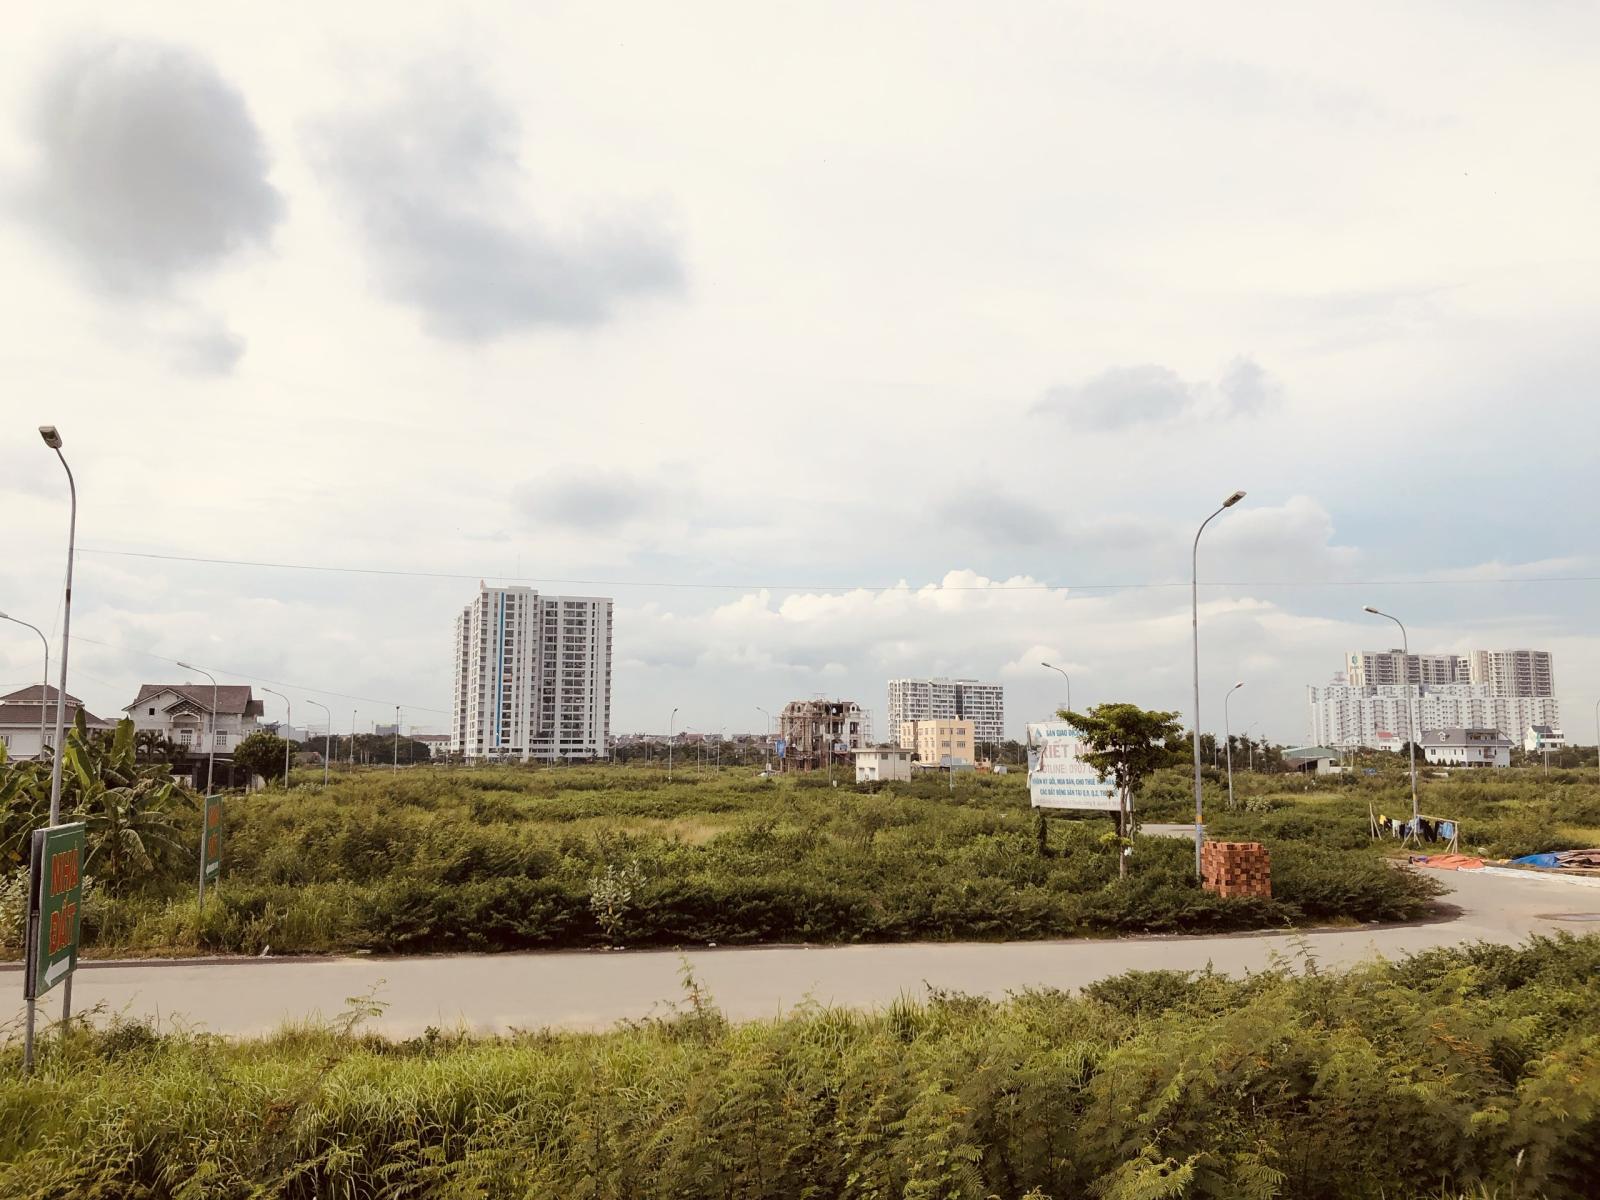 Chuyên giới thiệu đất nền dự án Phú Nhuận, phường Phước Long B, Tp. Thủ Đức (quận 9). 